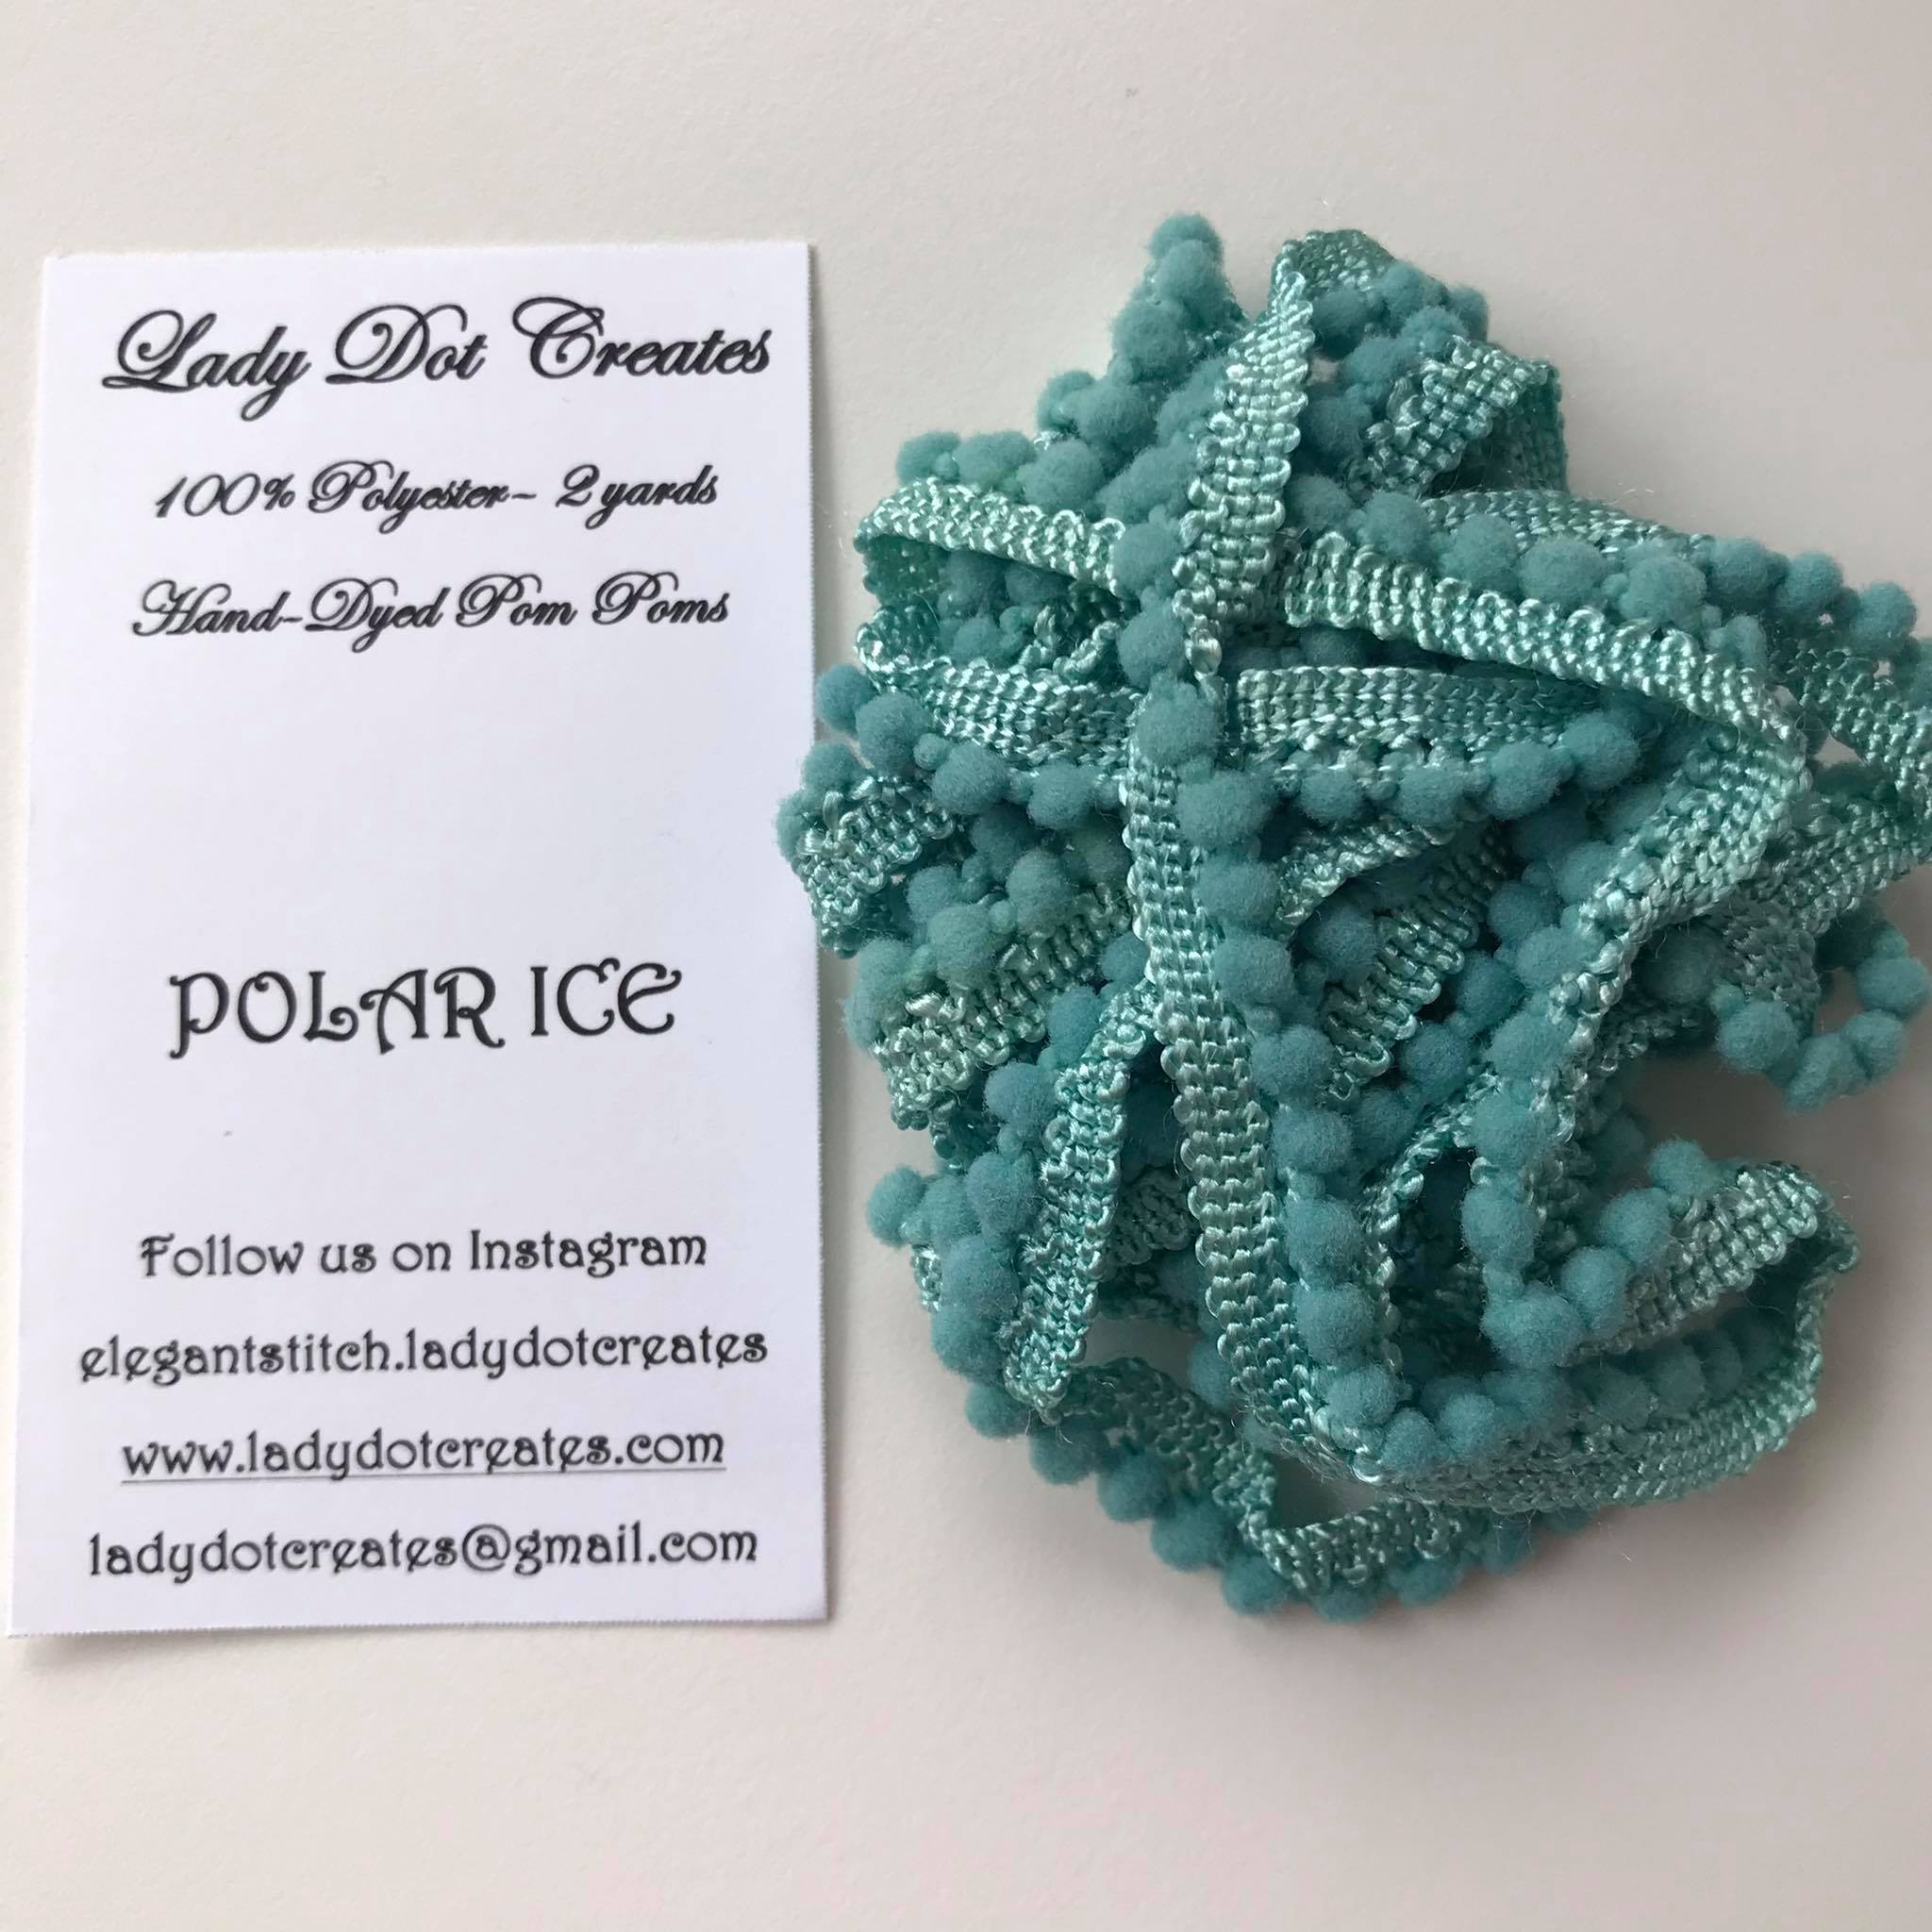 Mini Pom Poms - Polar Ice